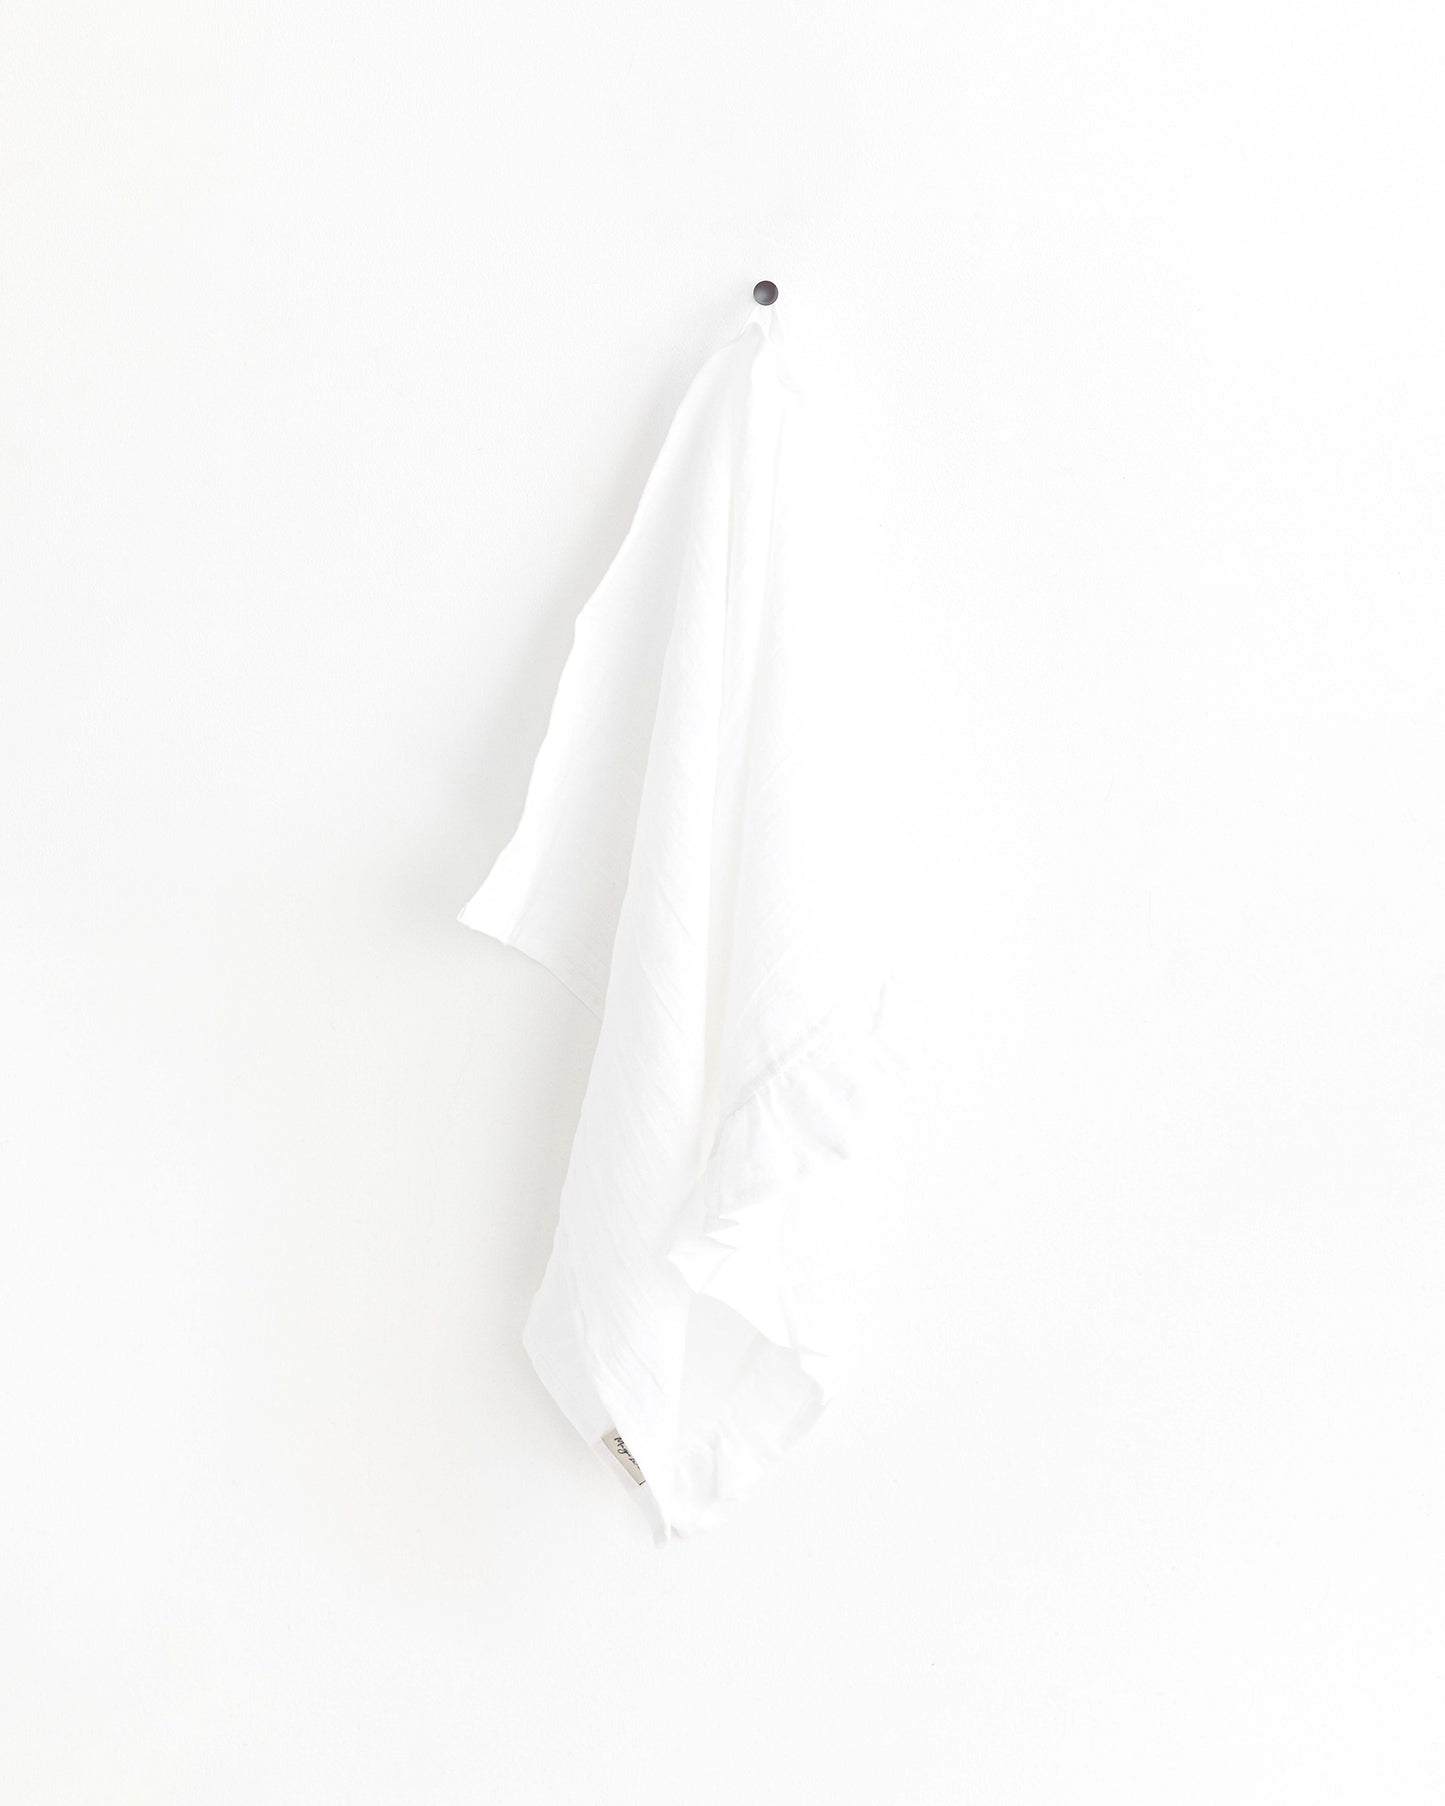 Ruffle trim linen tea towel in White - MagicLinen